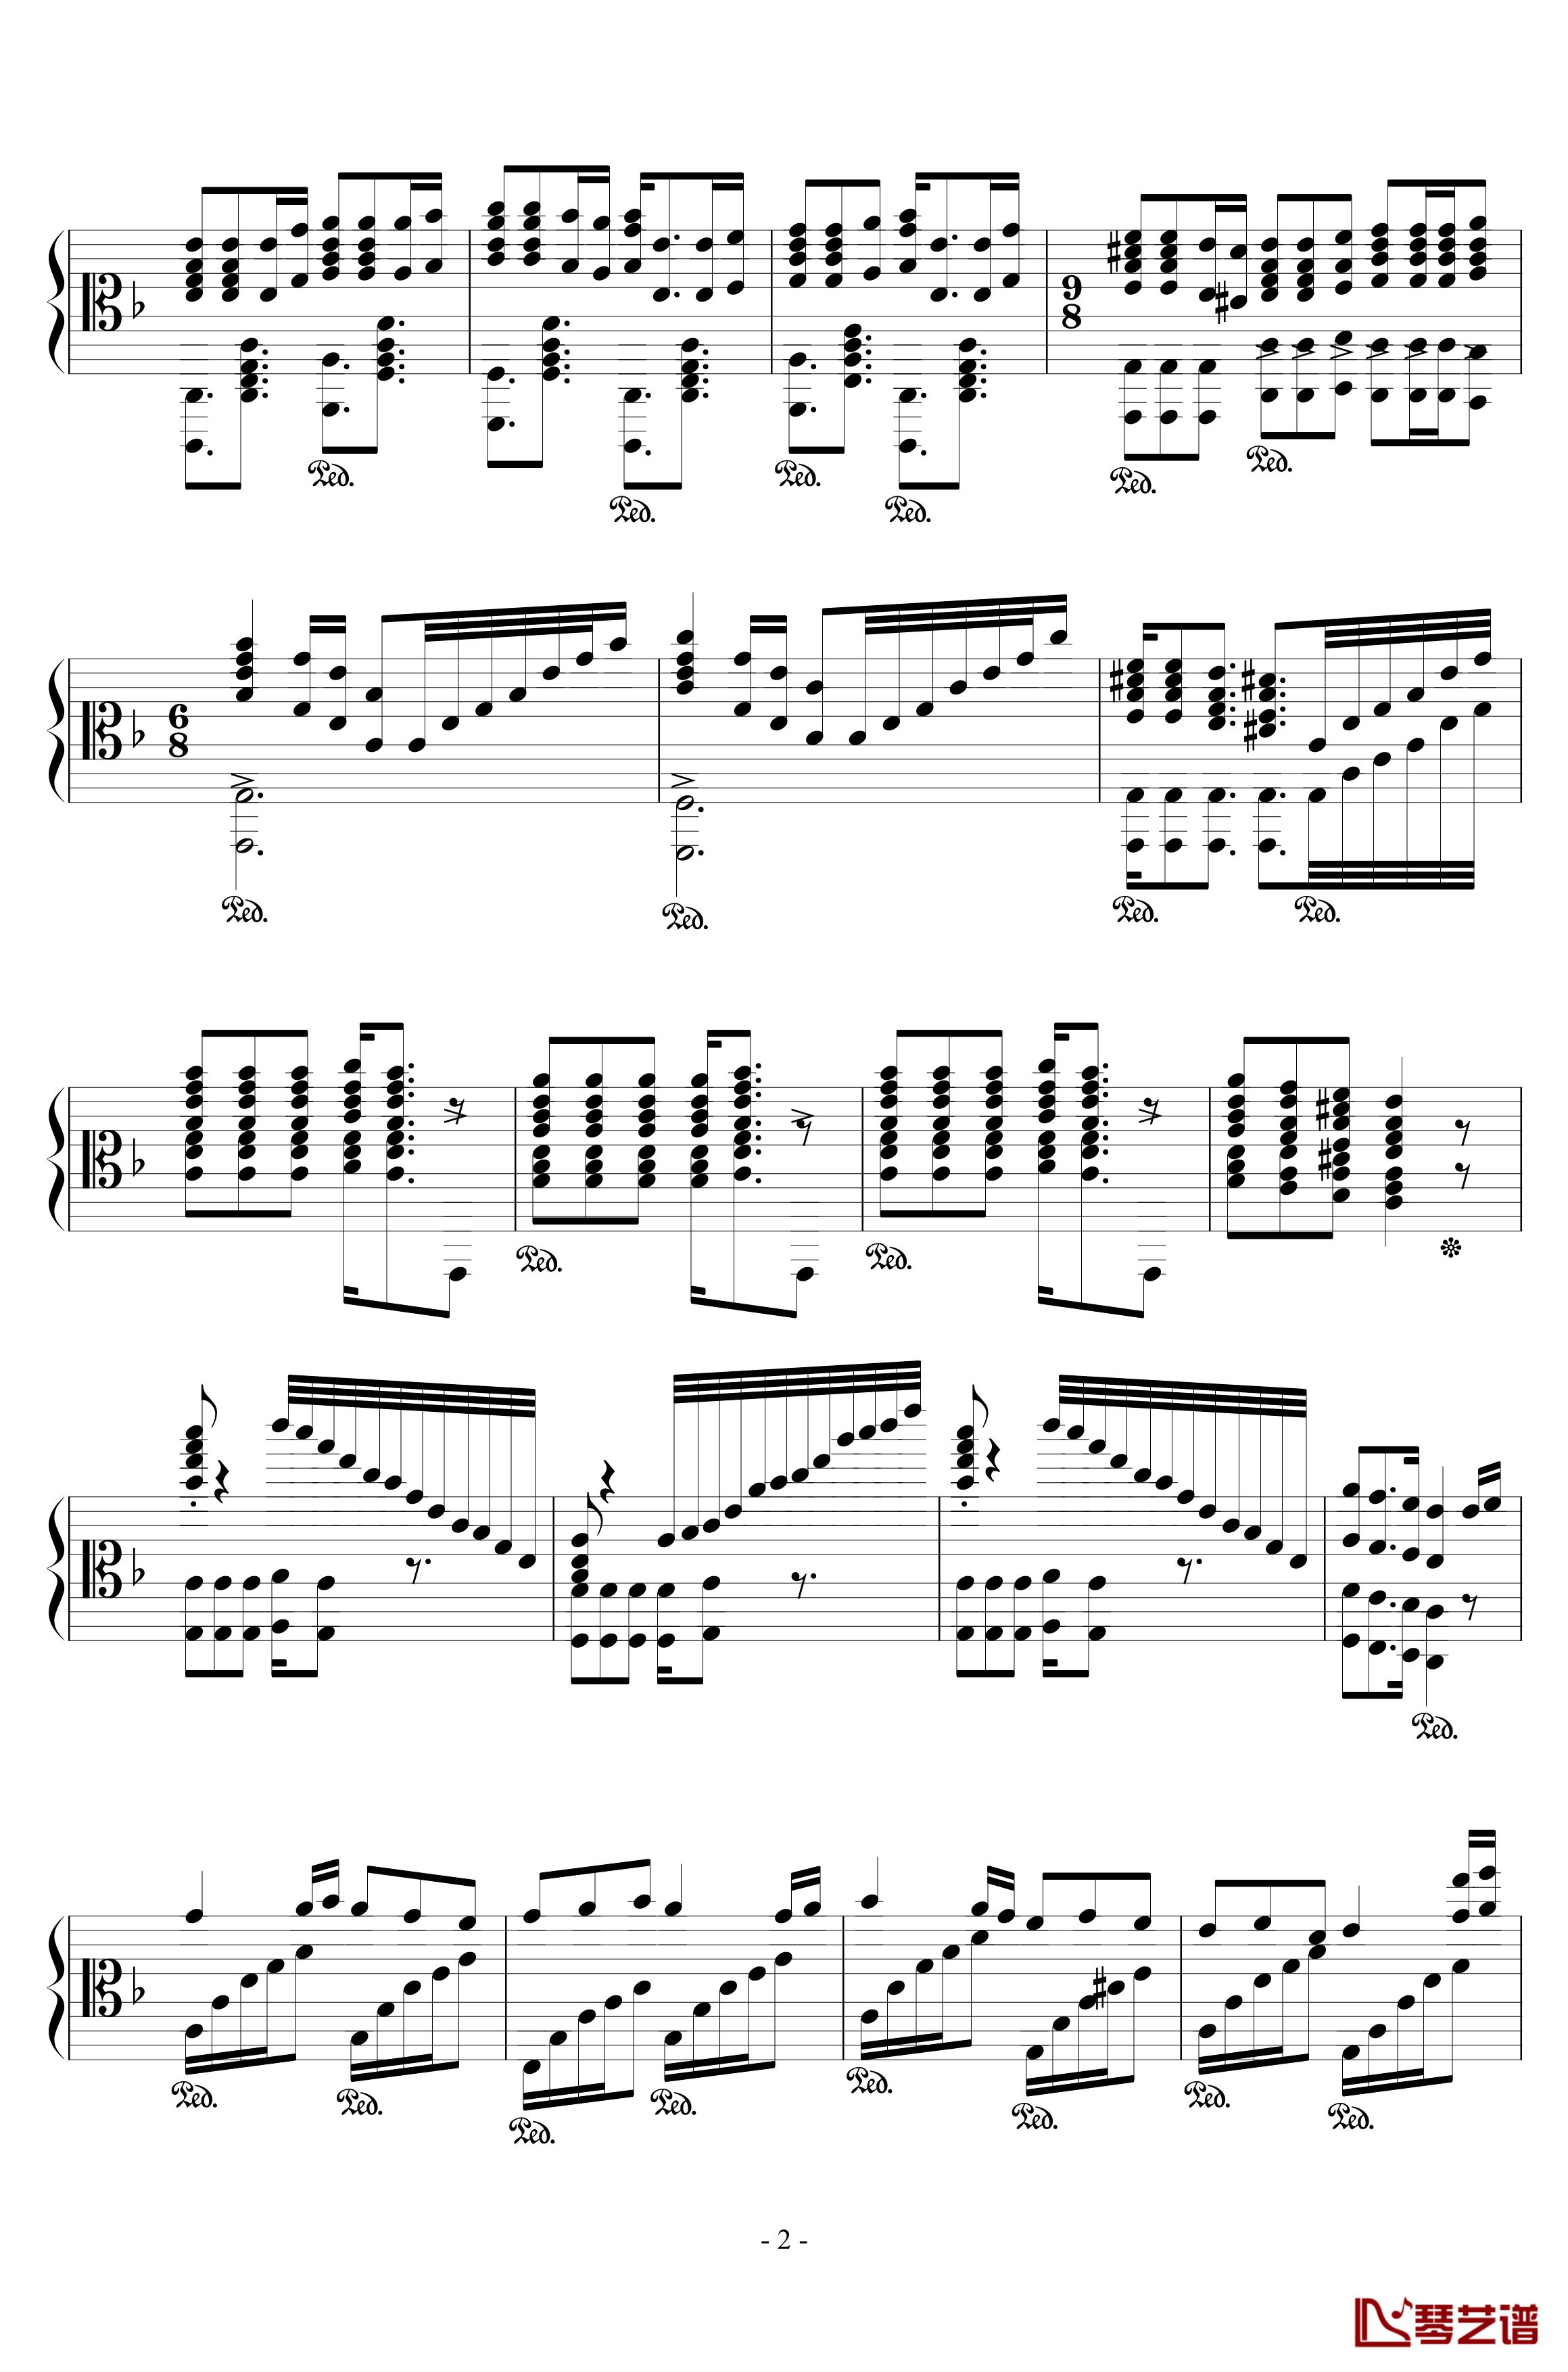 加勒比海盗钢琴谱-混合版-Hans Zimmer2